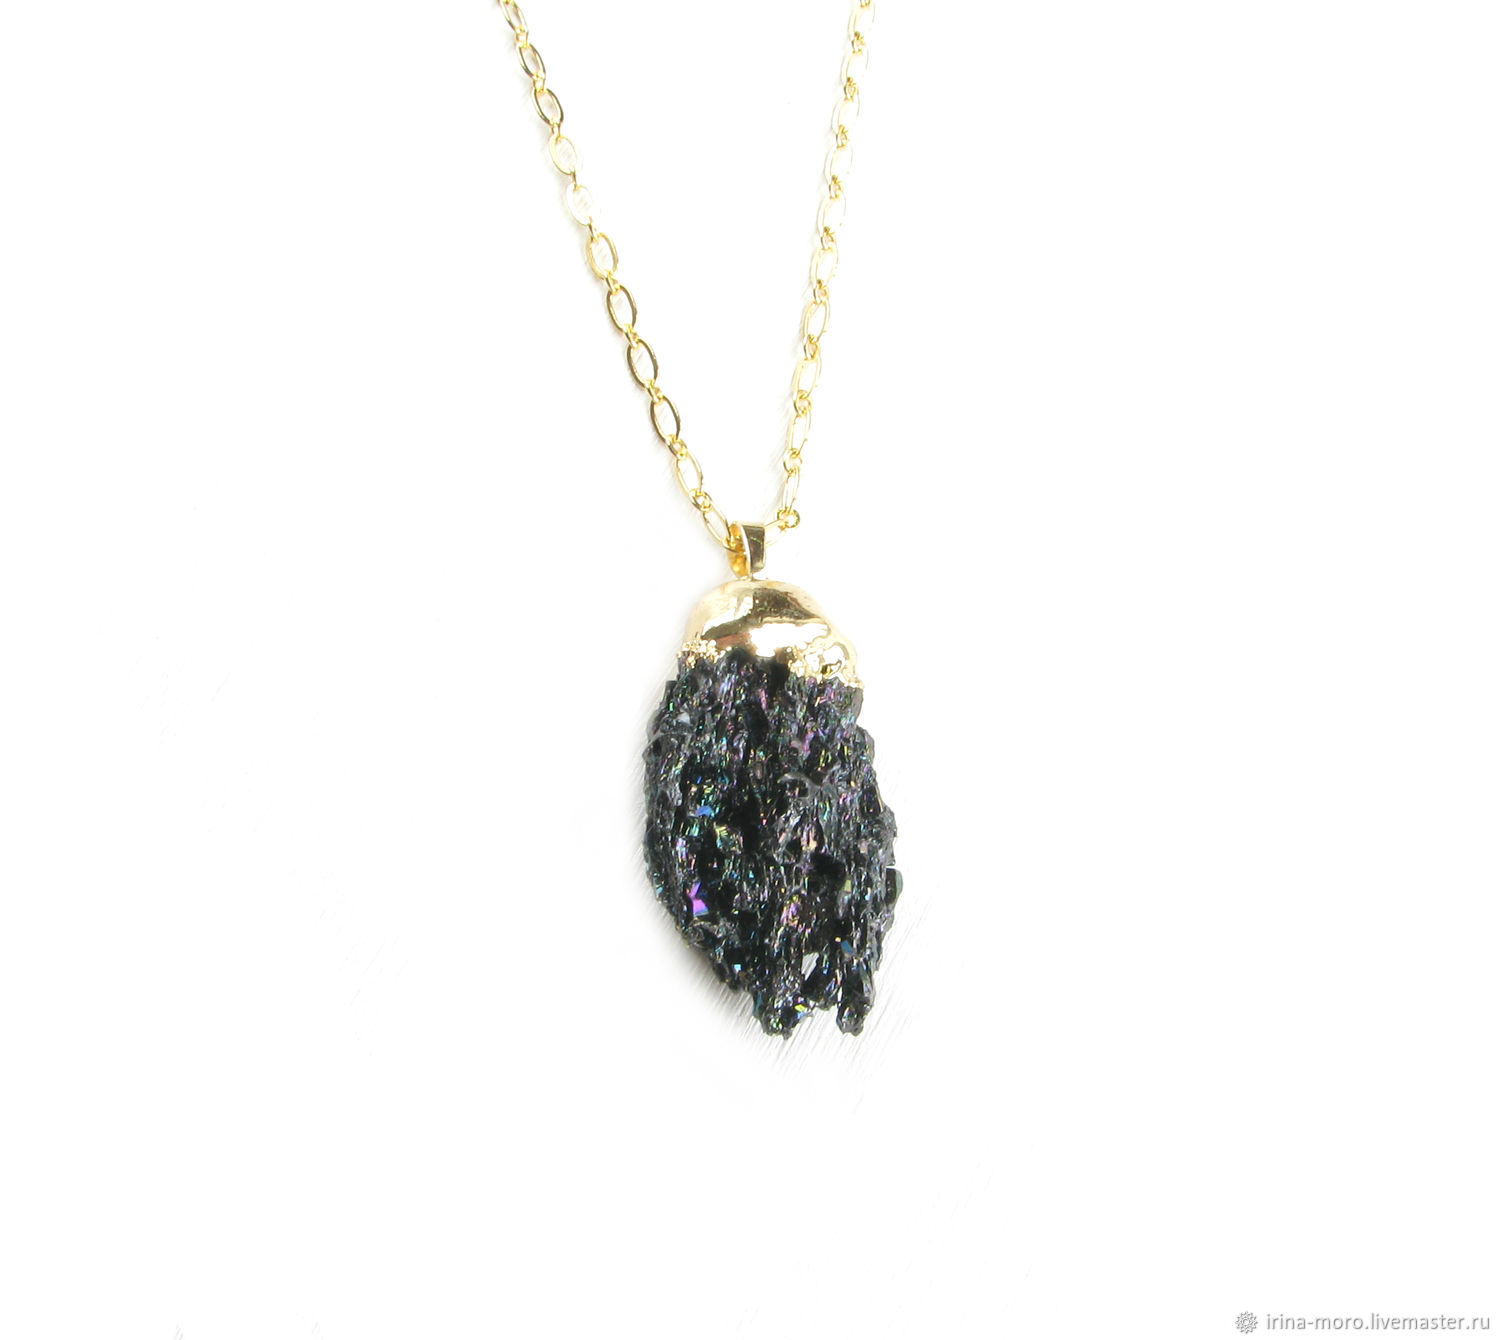 Black pendant on a chain, Druse quartz 